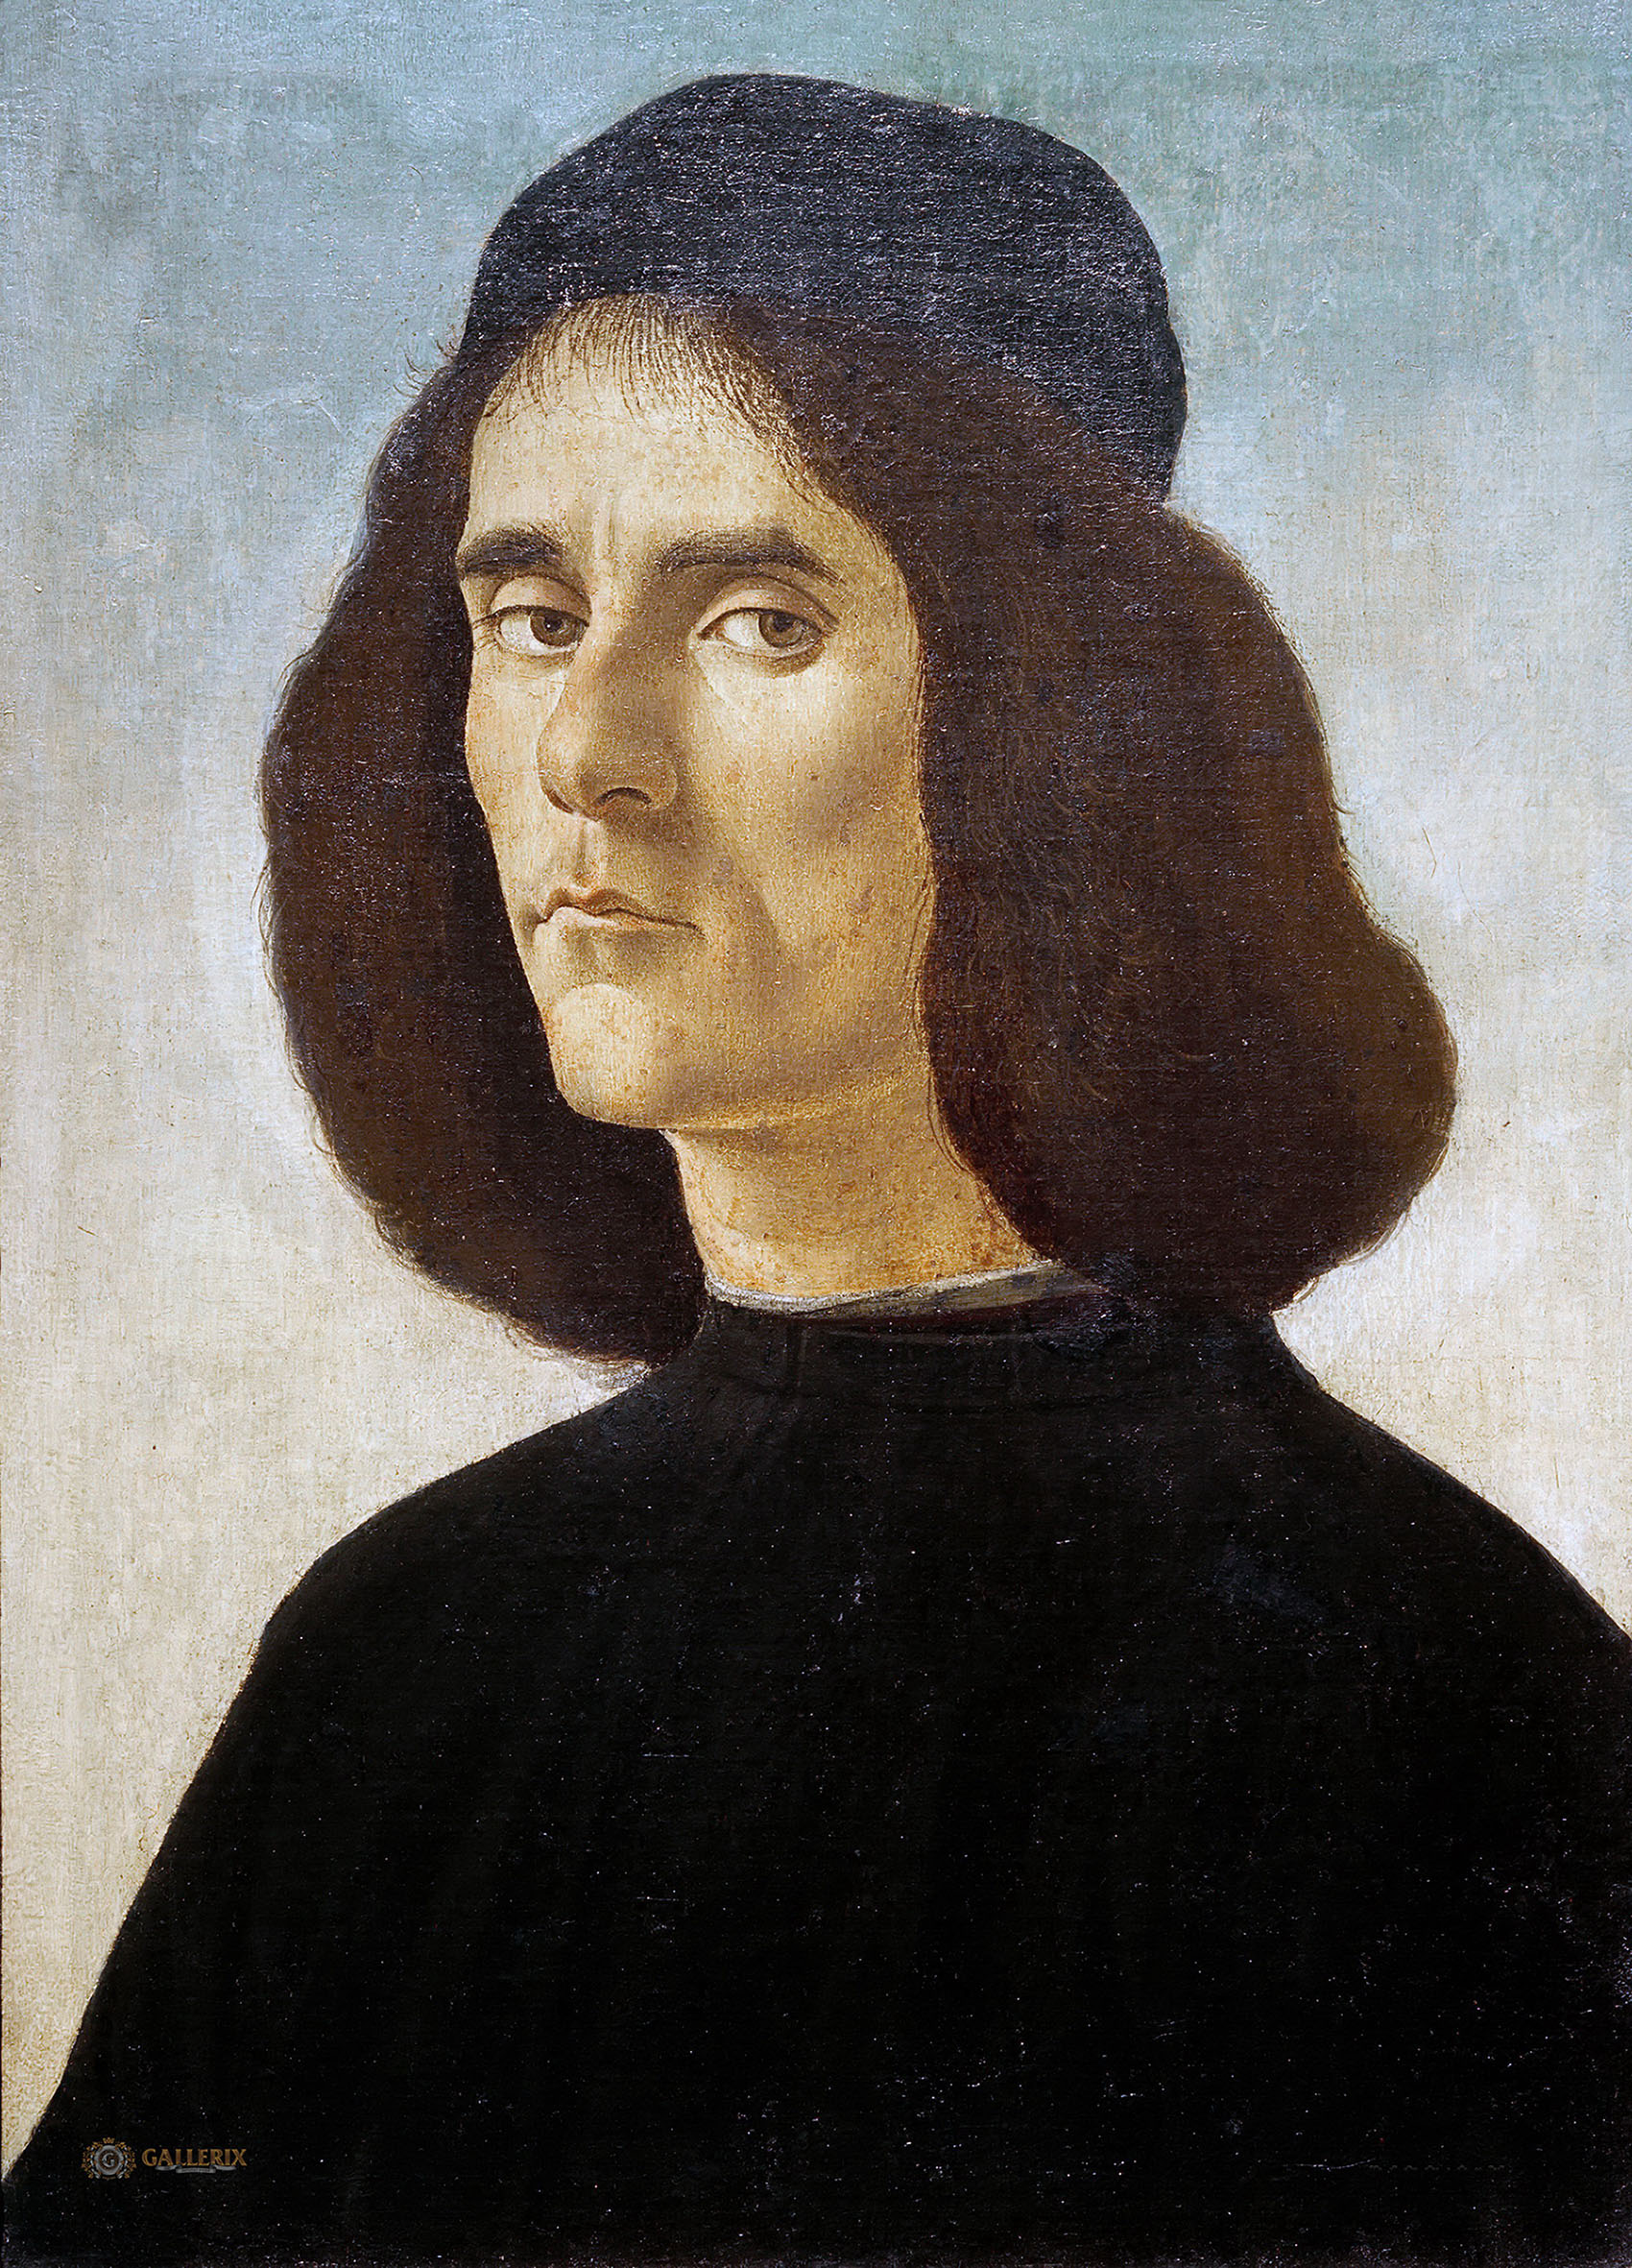 Сандро Боттичелли. "Мужской портрет". около 1490ю Частная коллекция.